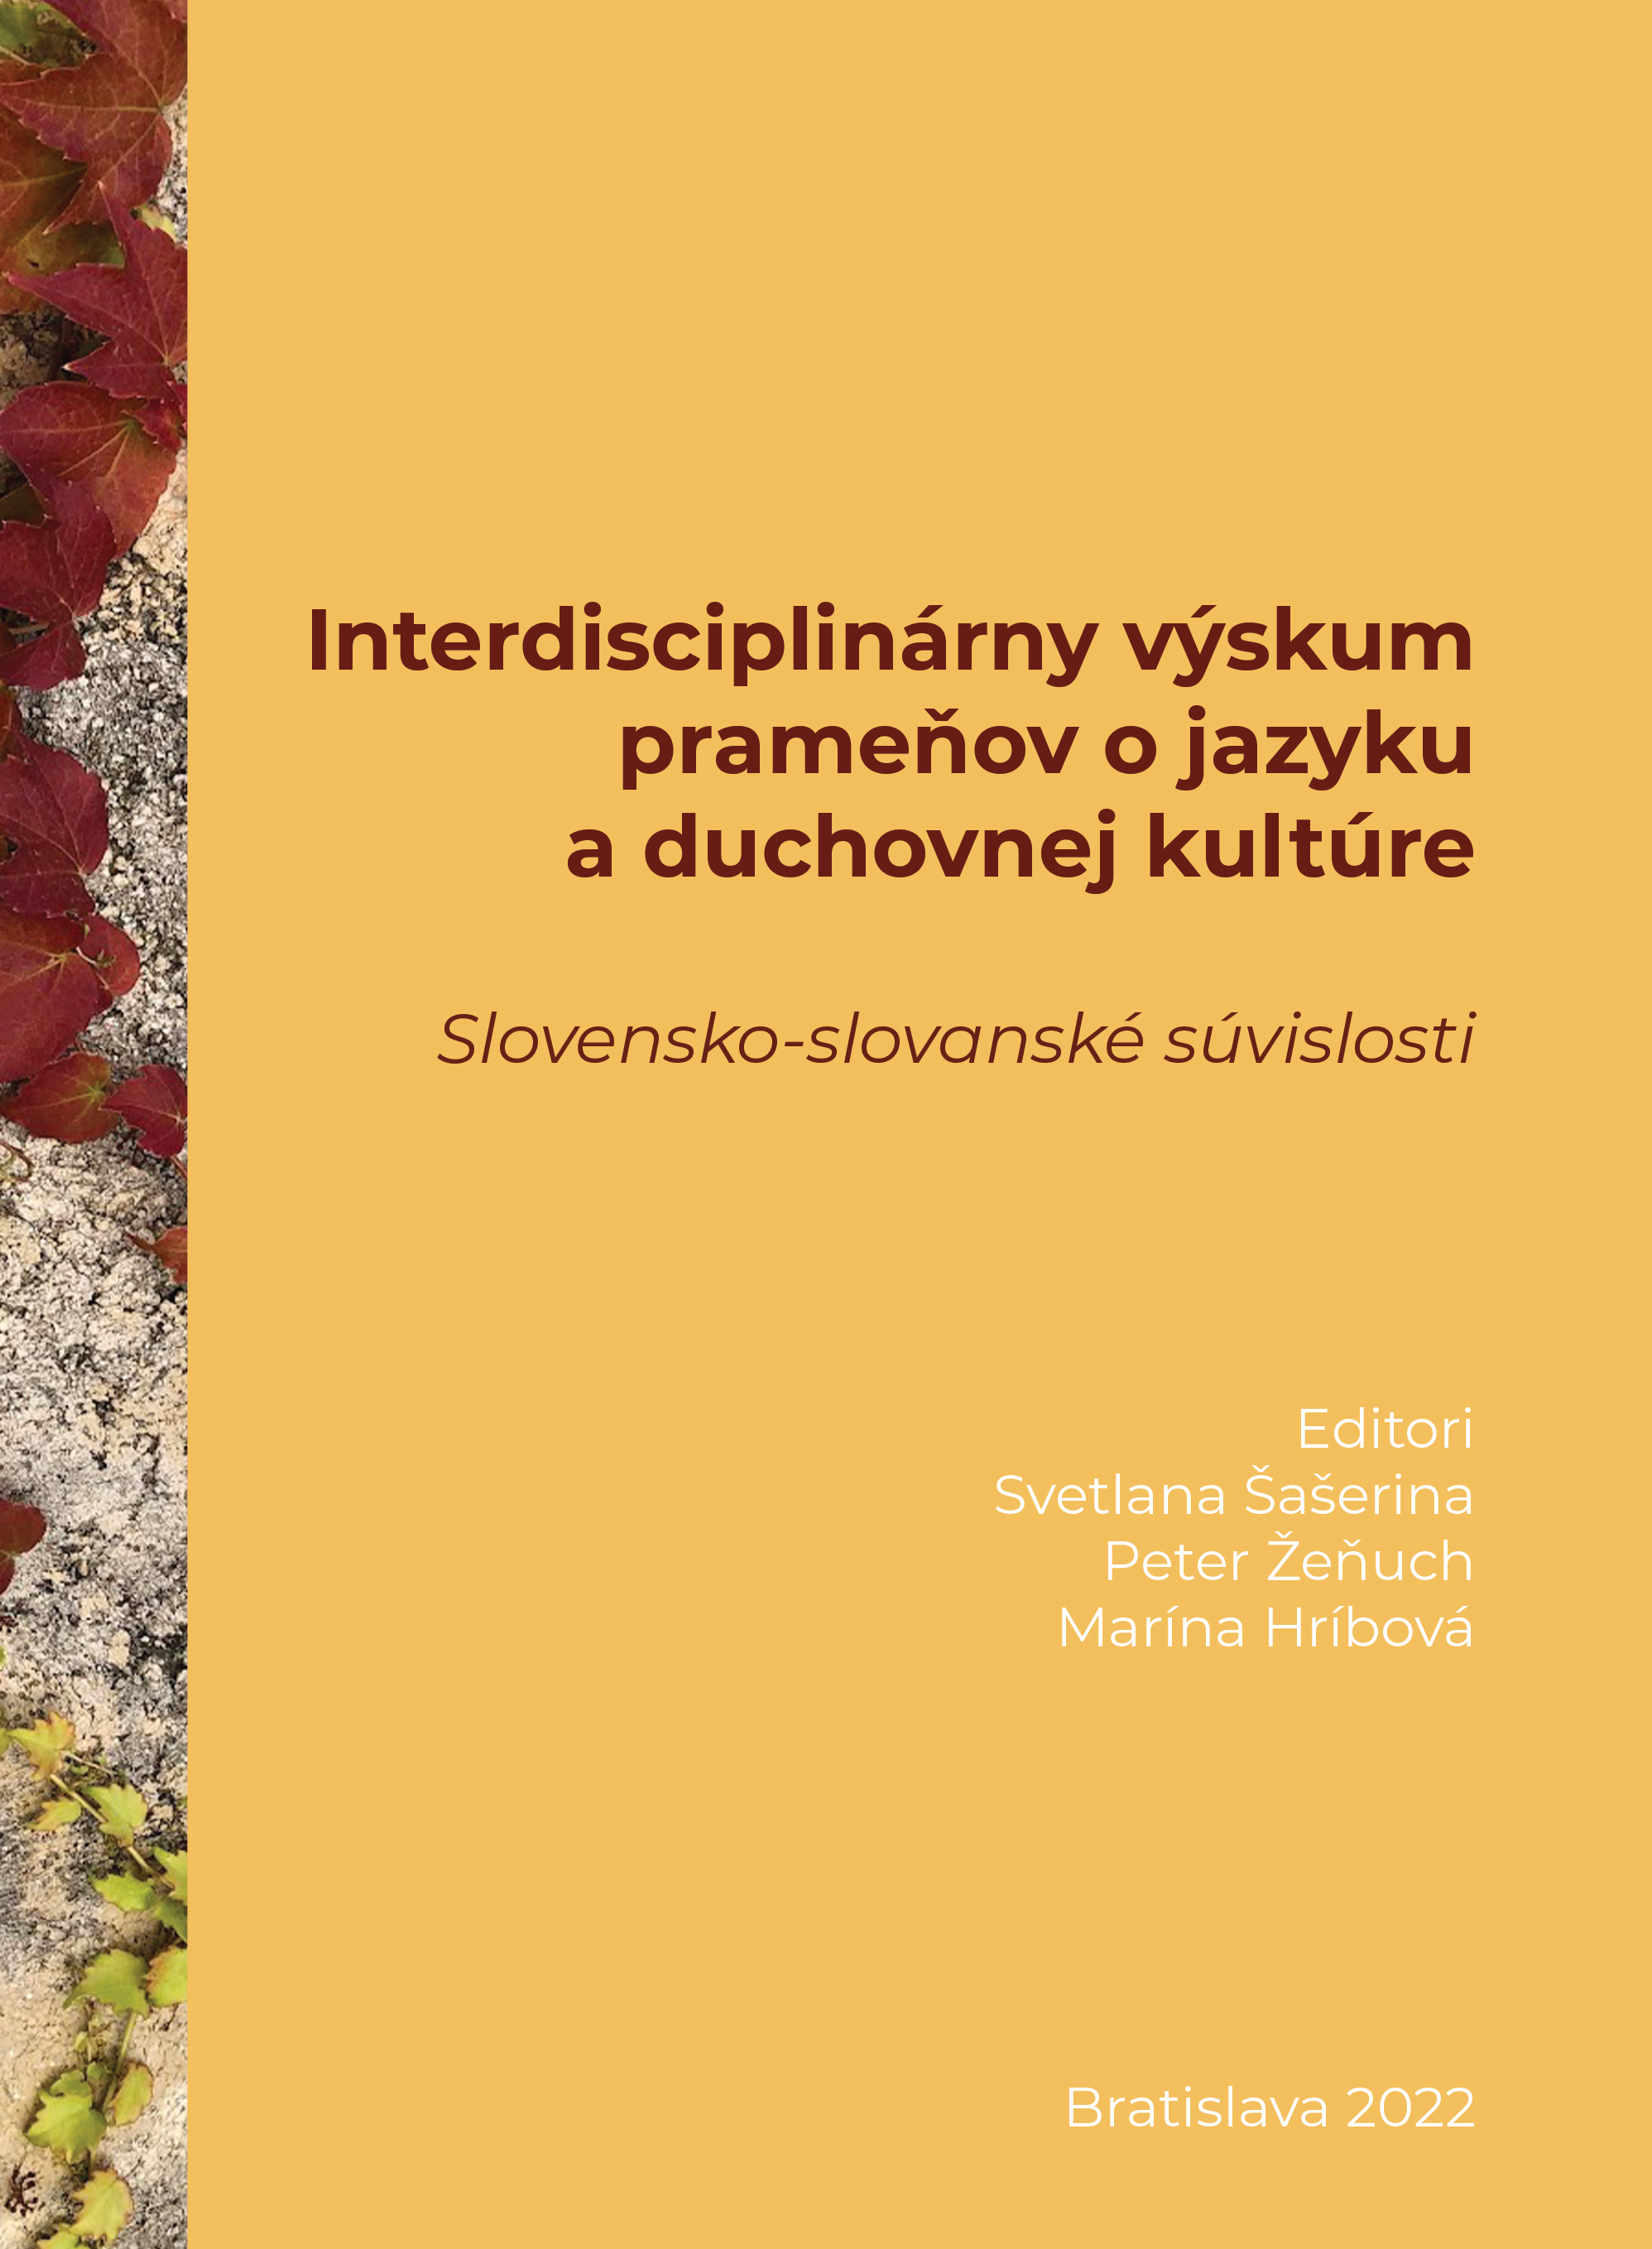 Interdisciplinárny výskum prameňov o jazyku a duchovnej kultúre: Slovensko-slovanské súvislosti